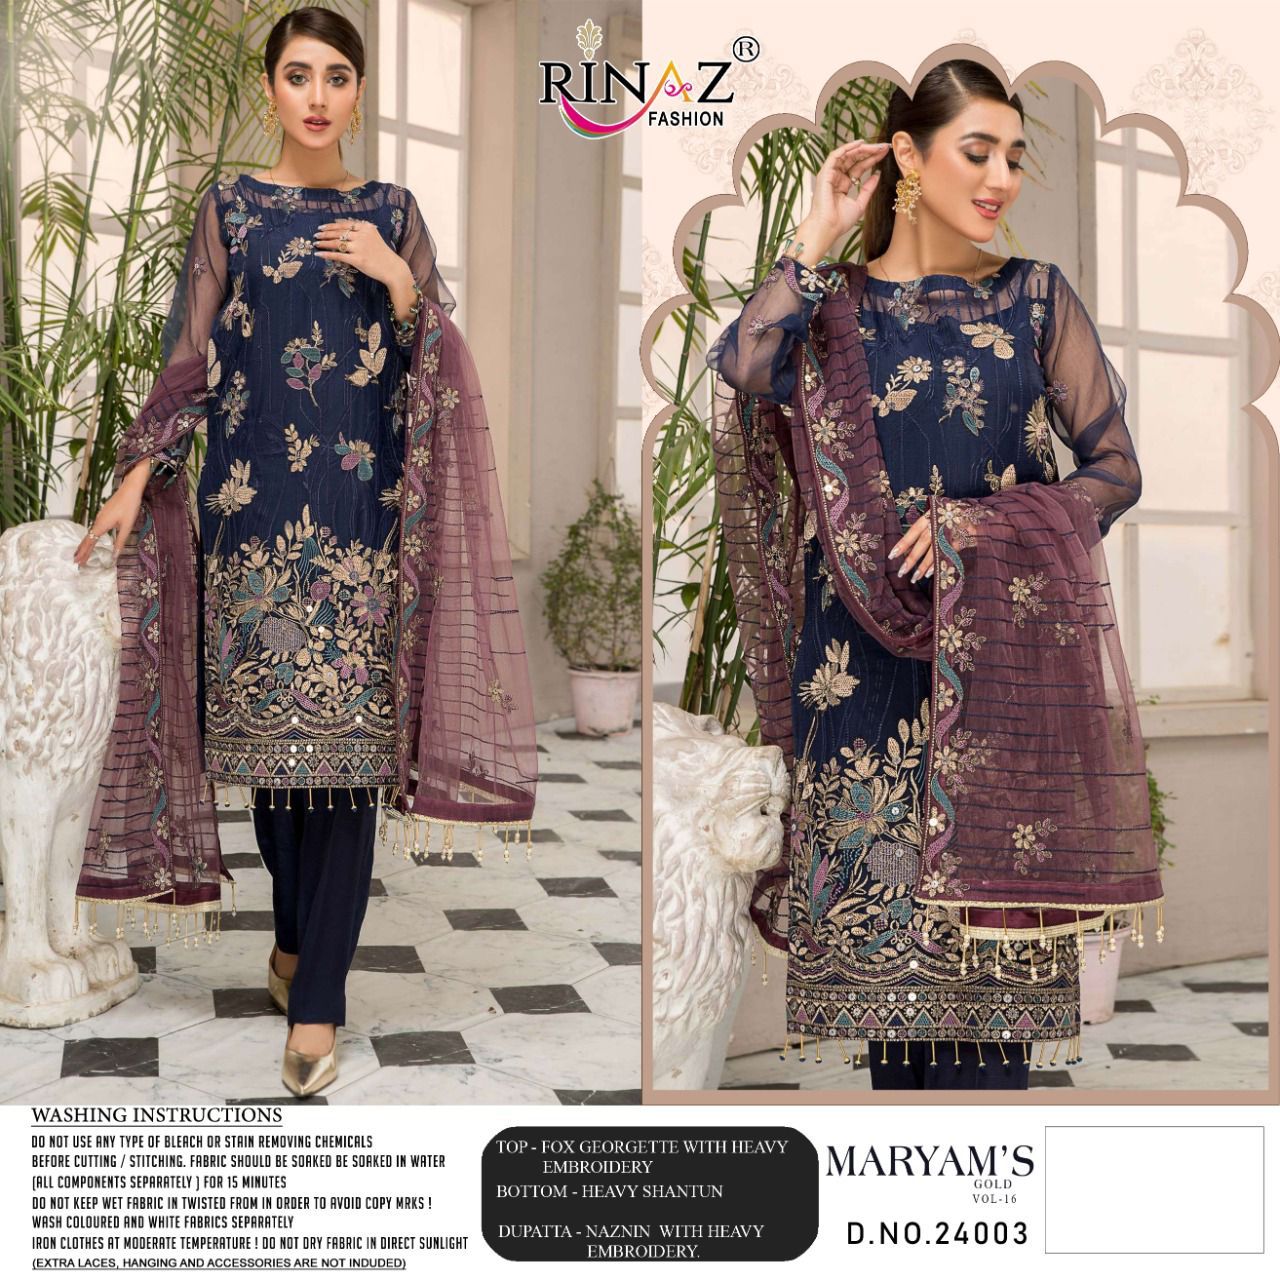 Rinaz Fashion Maryam's Gold 24003